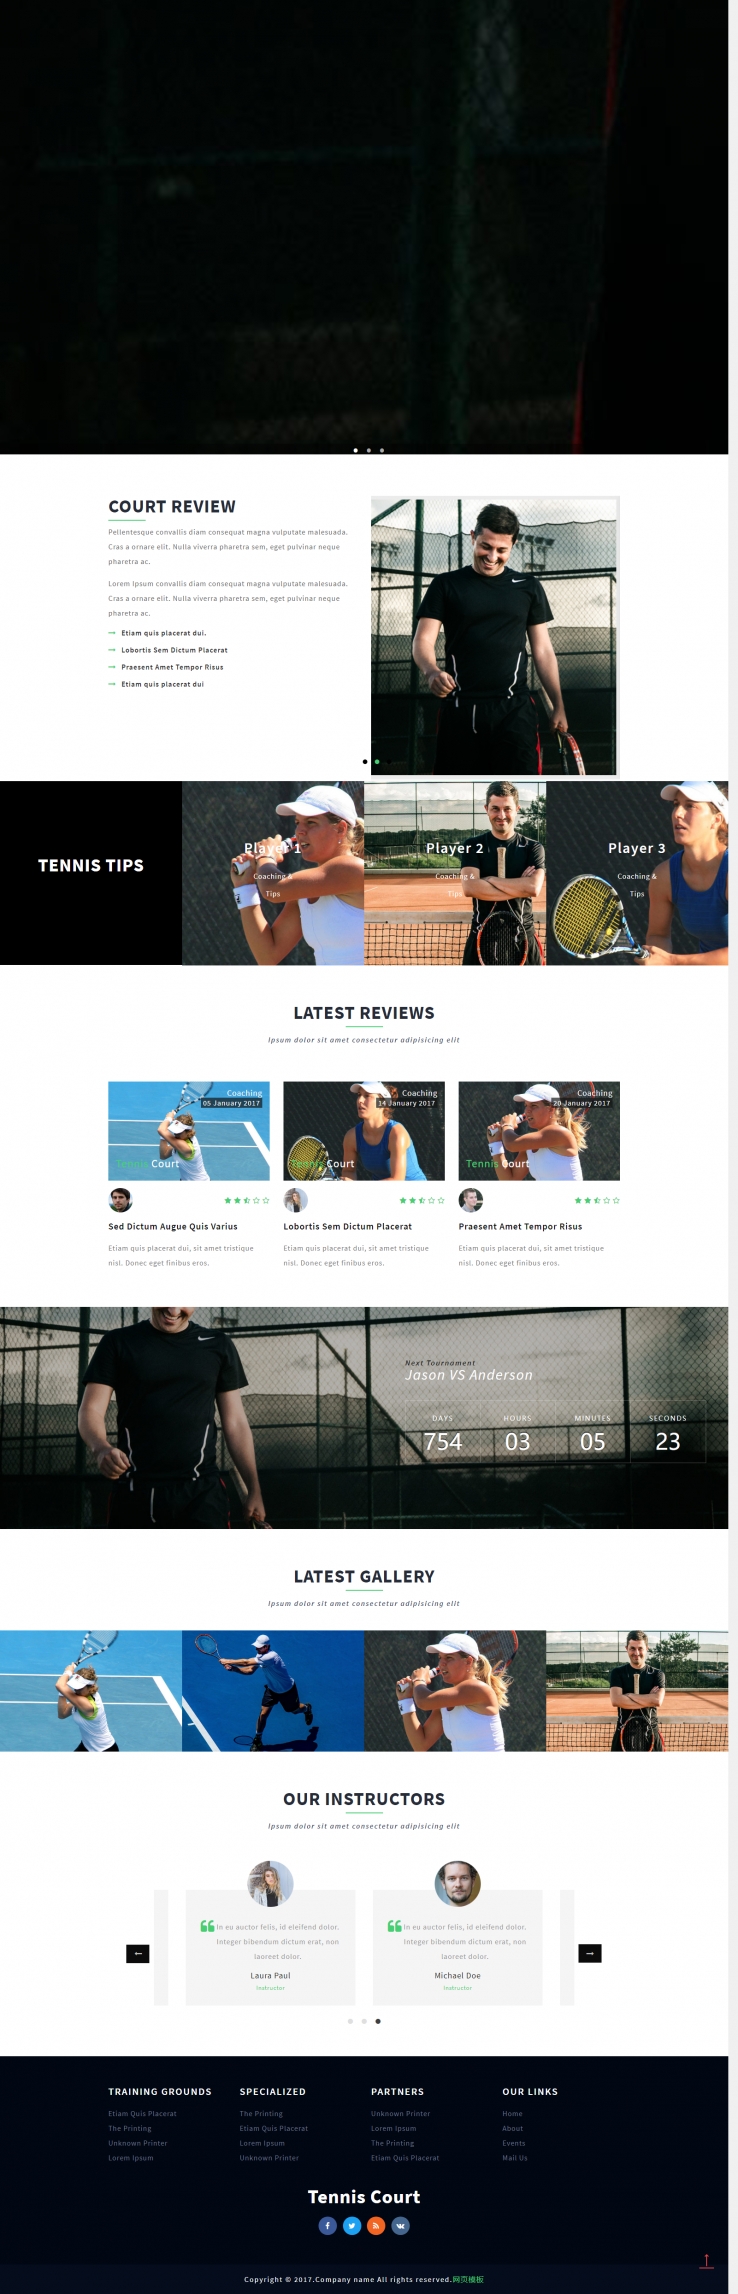 白色宽屏风格的网球比赛模板下载